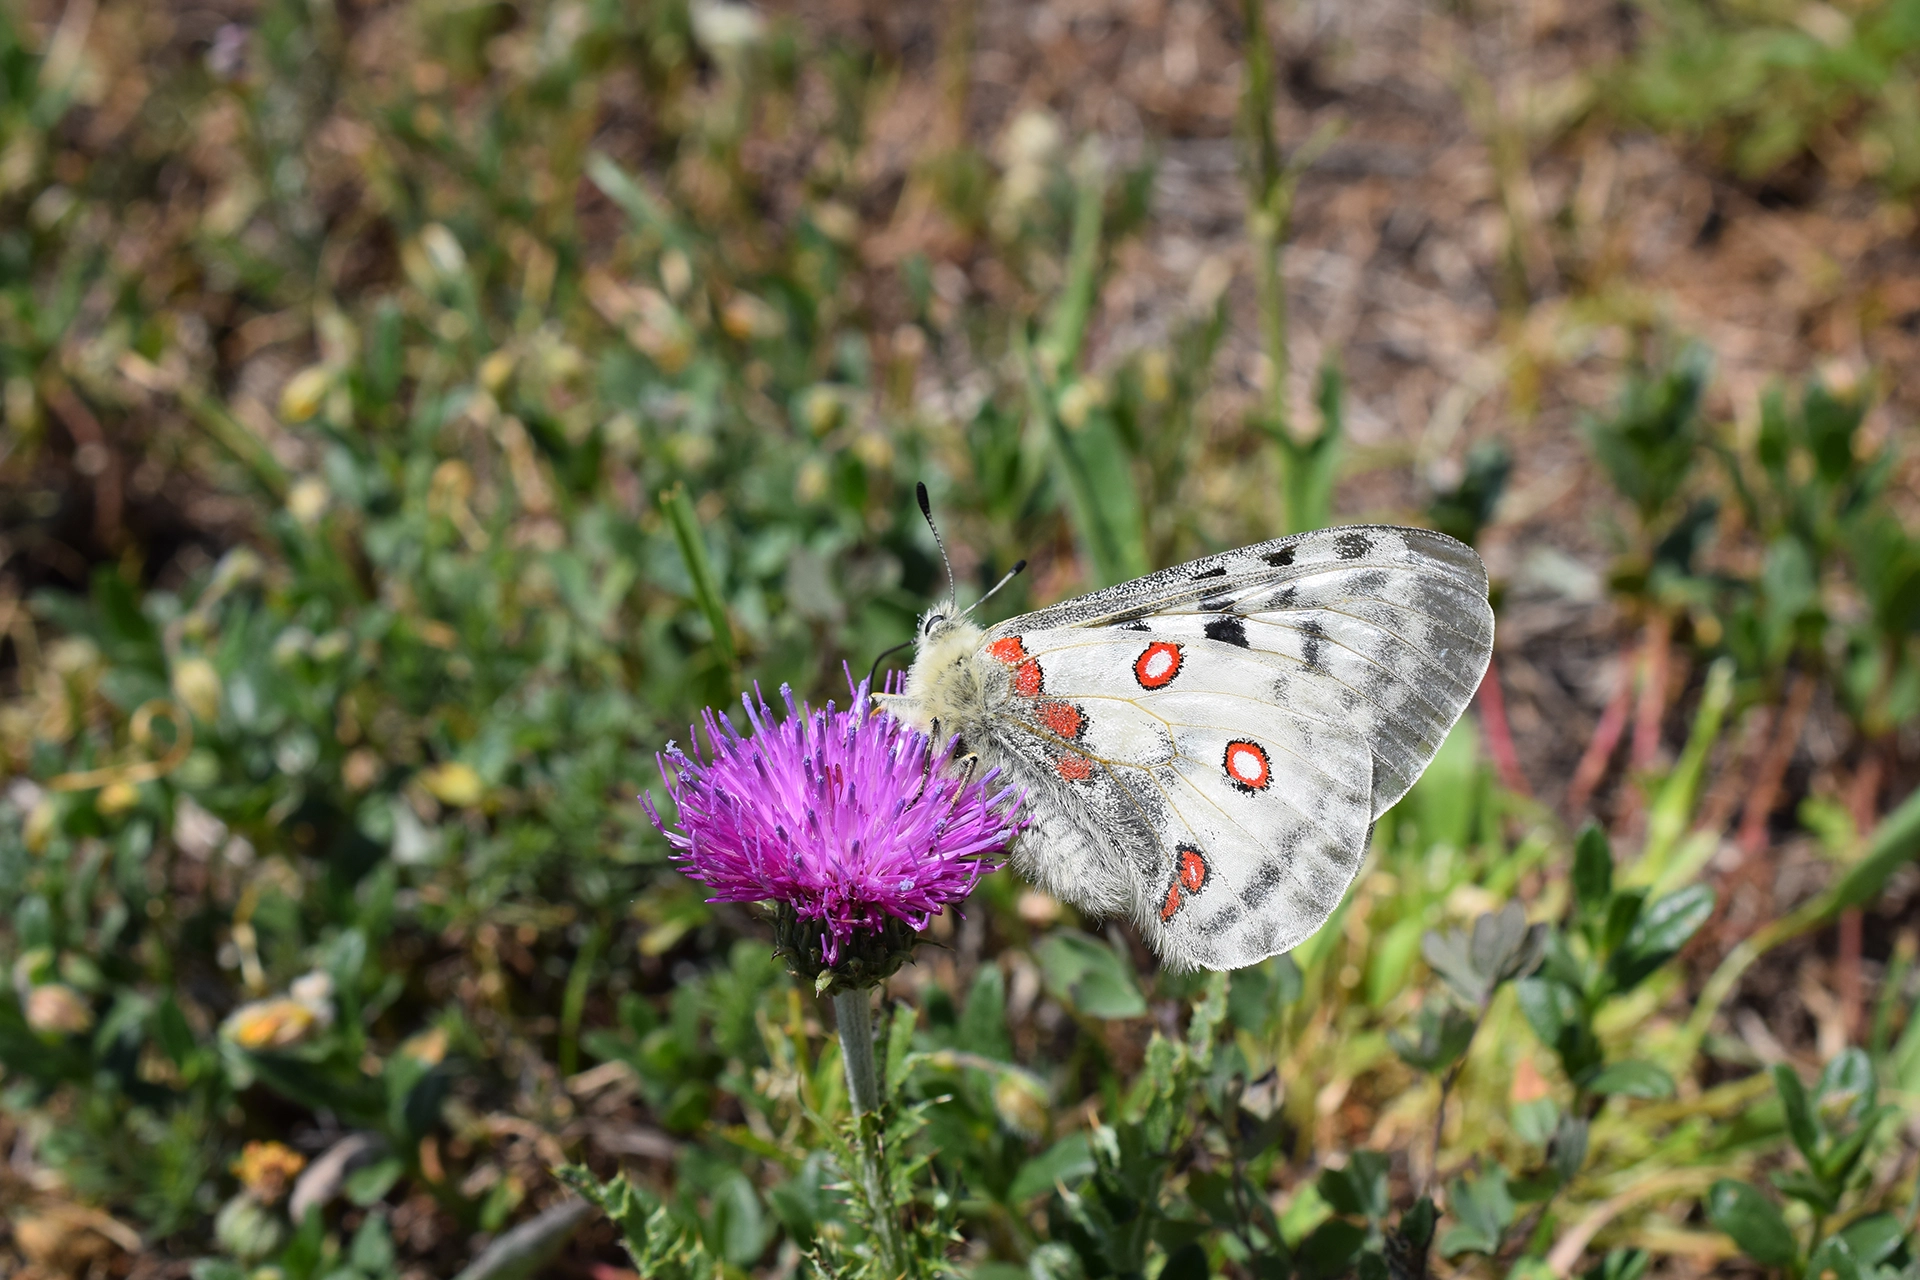 Apollo (Parnassius apollo)Protetto a livello europeo, l’Apollo è considerata la farfalla simbolo delle Alpi, ed è oggetto di monitoraggio insieme ad altre specie all’interno del progetto Biodiversità del Parco.